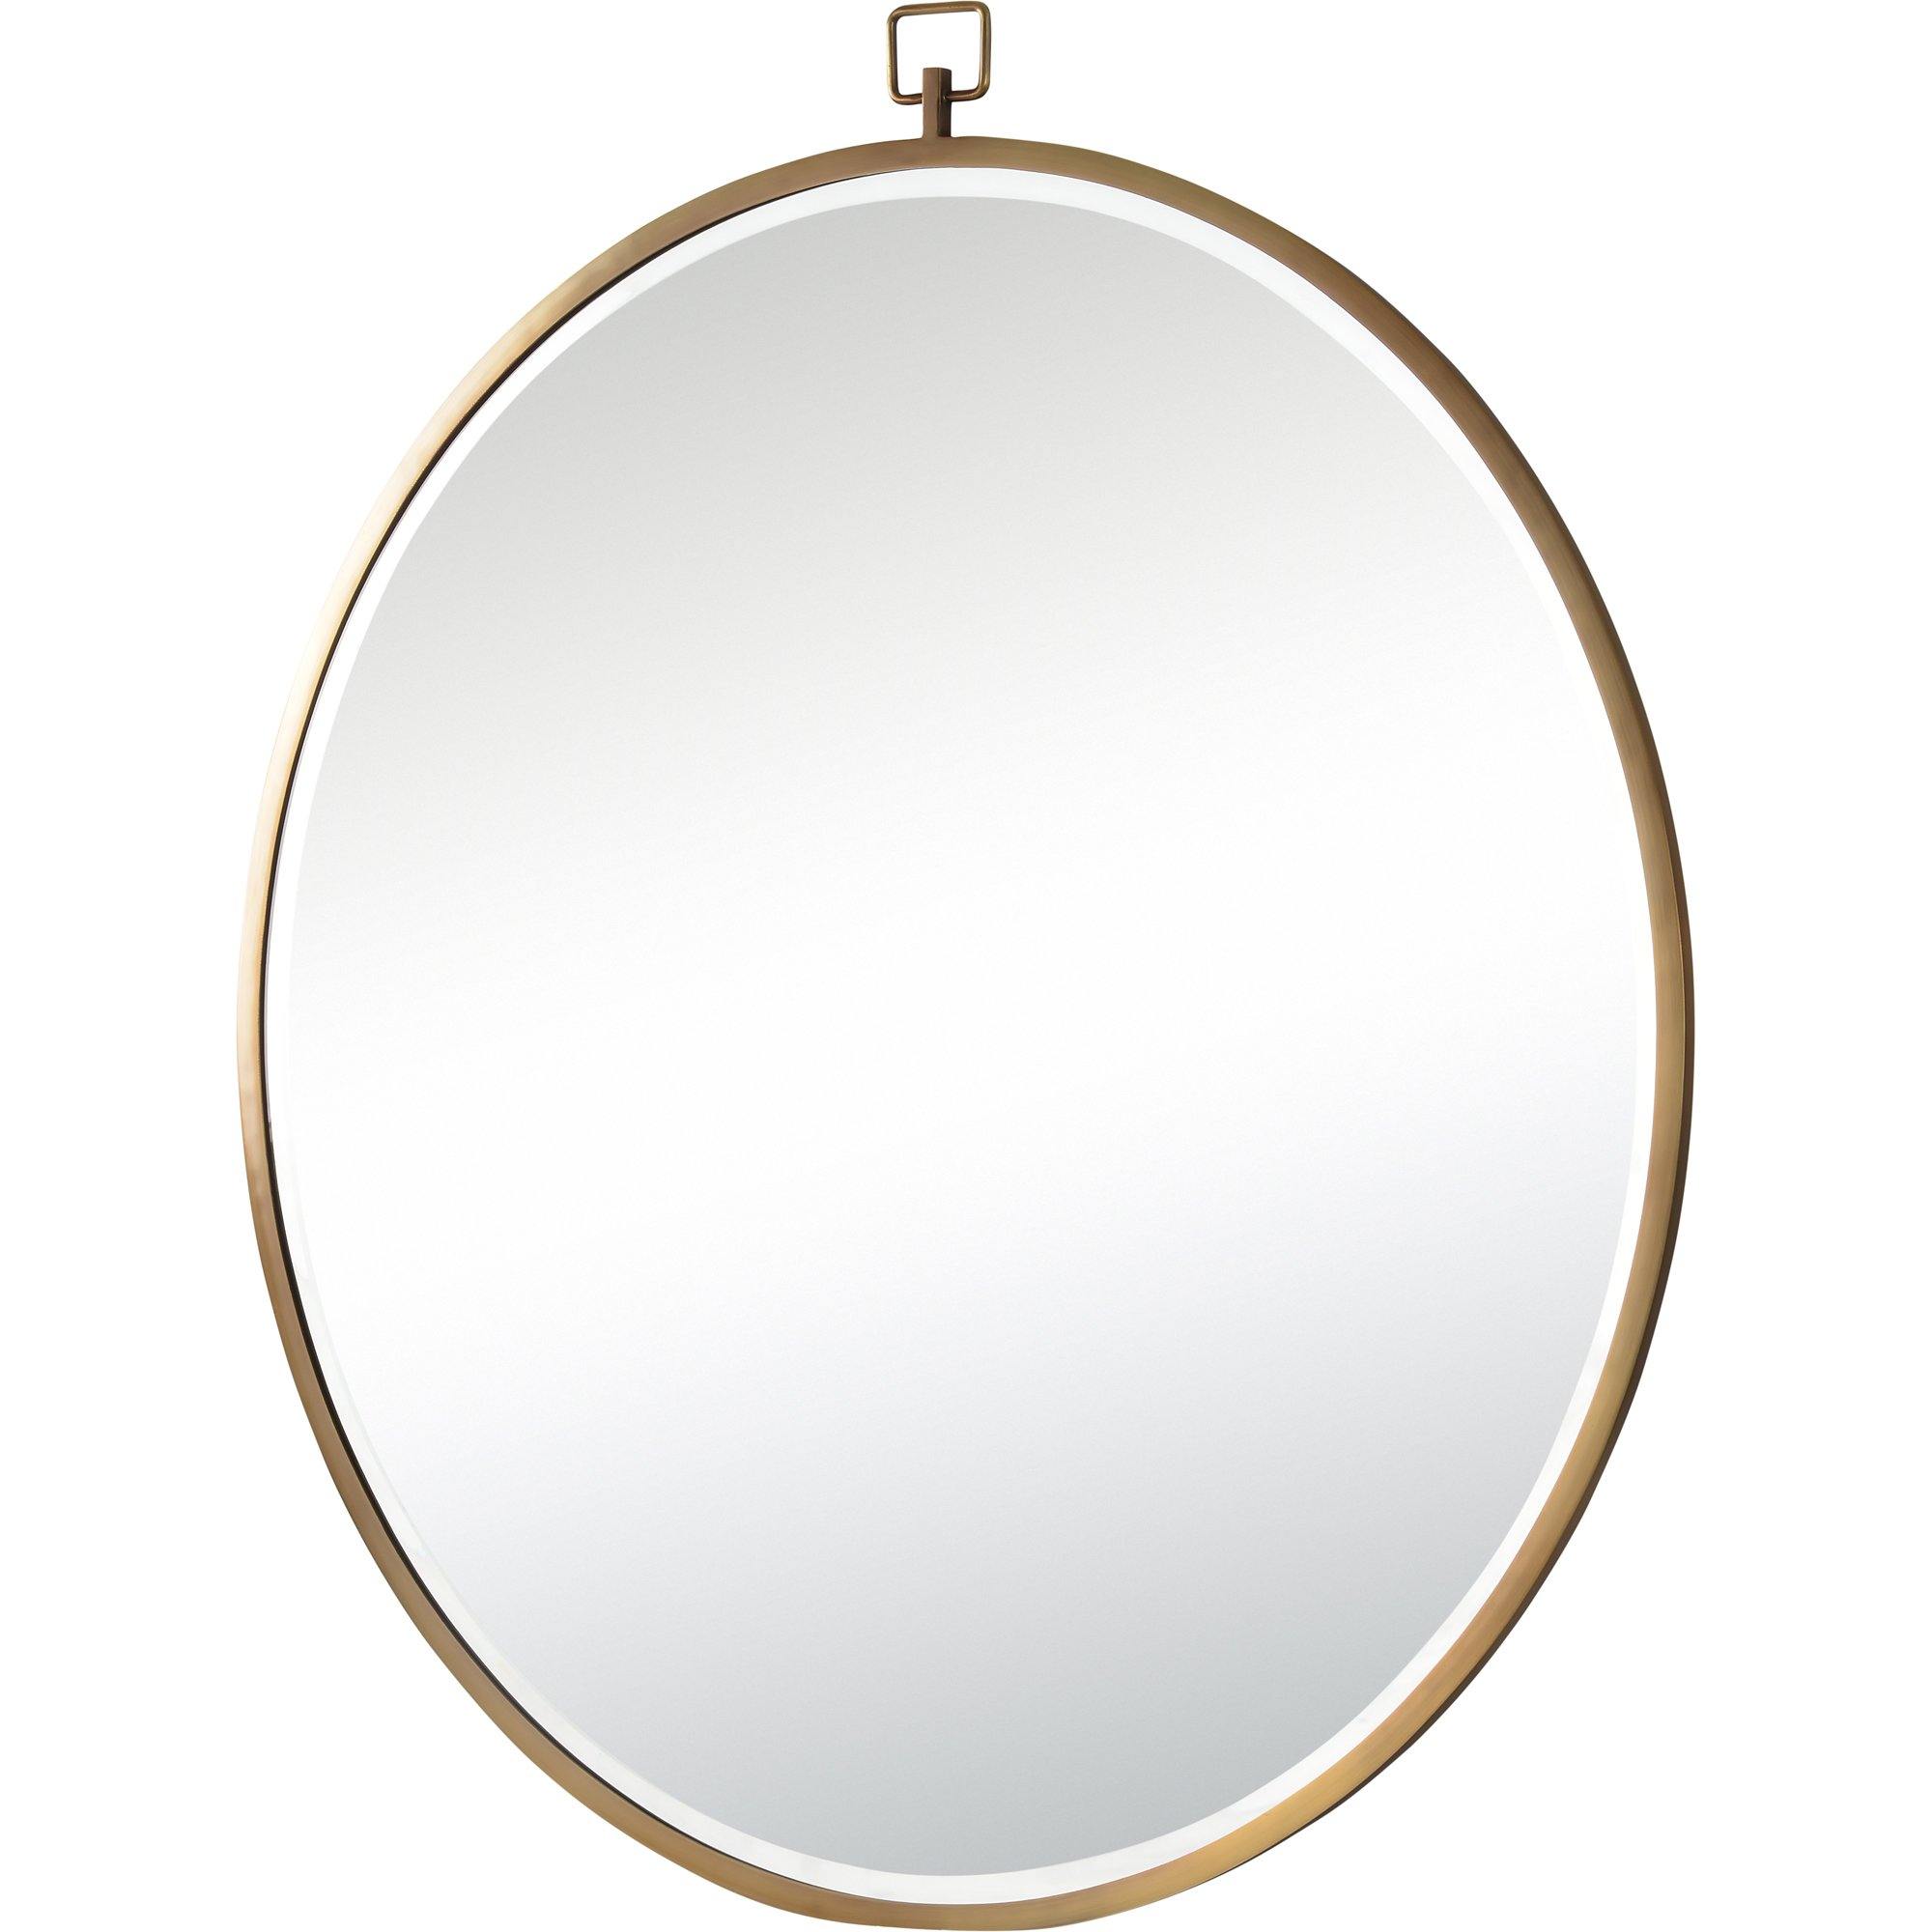 Azam Gold Round Mirror - Reimagine Designs - 